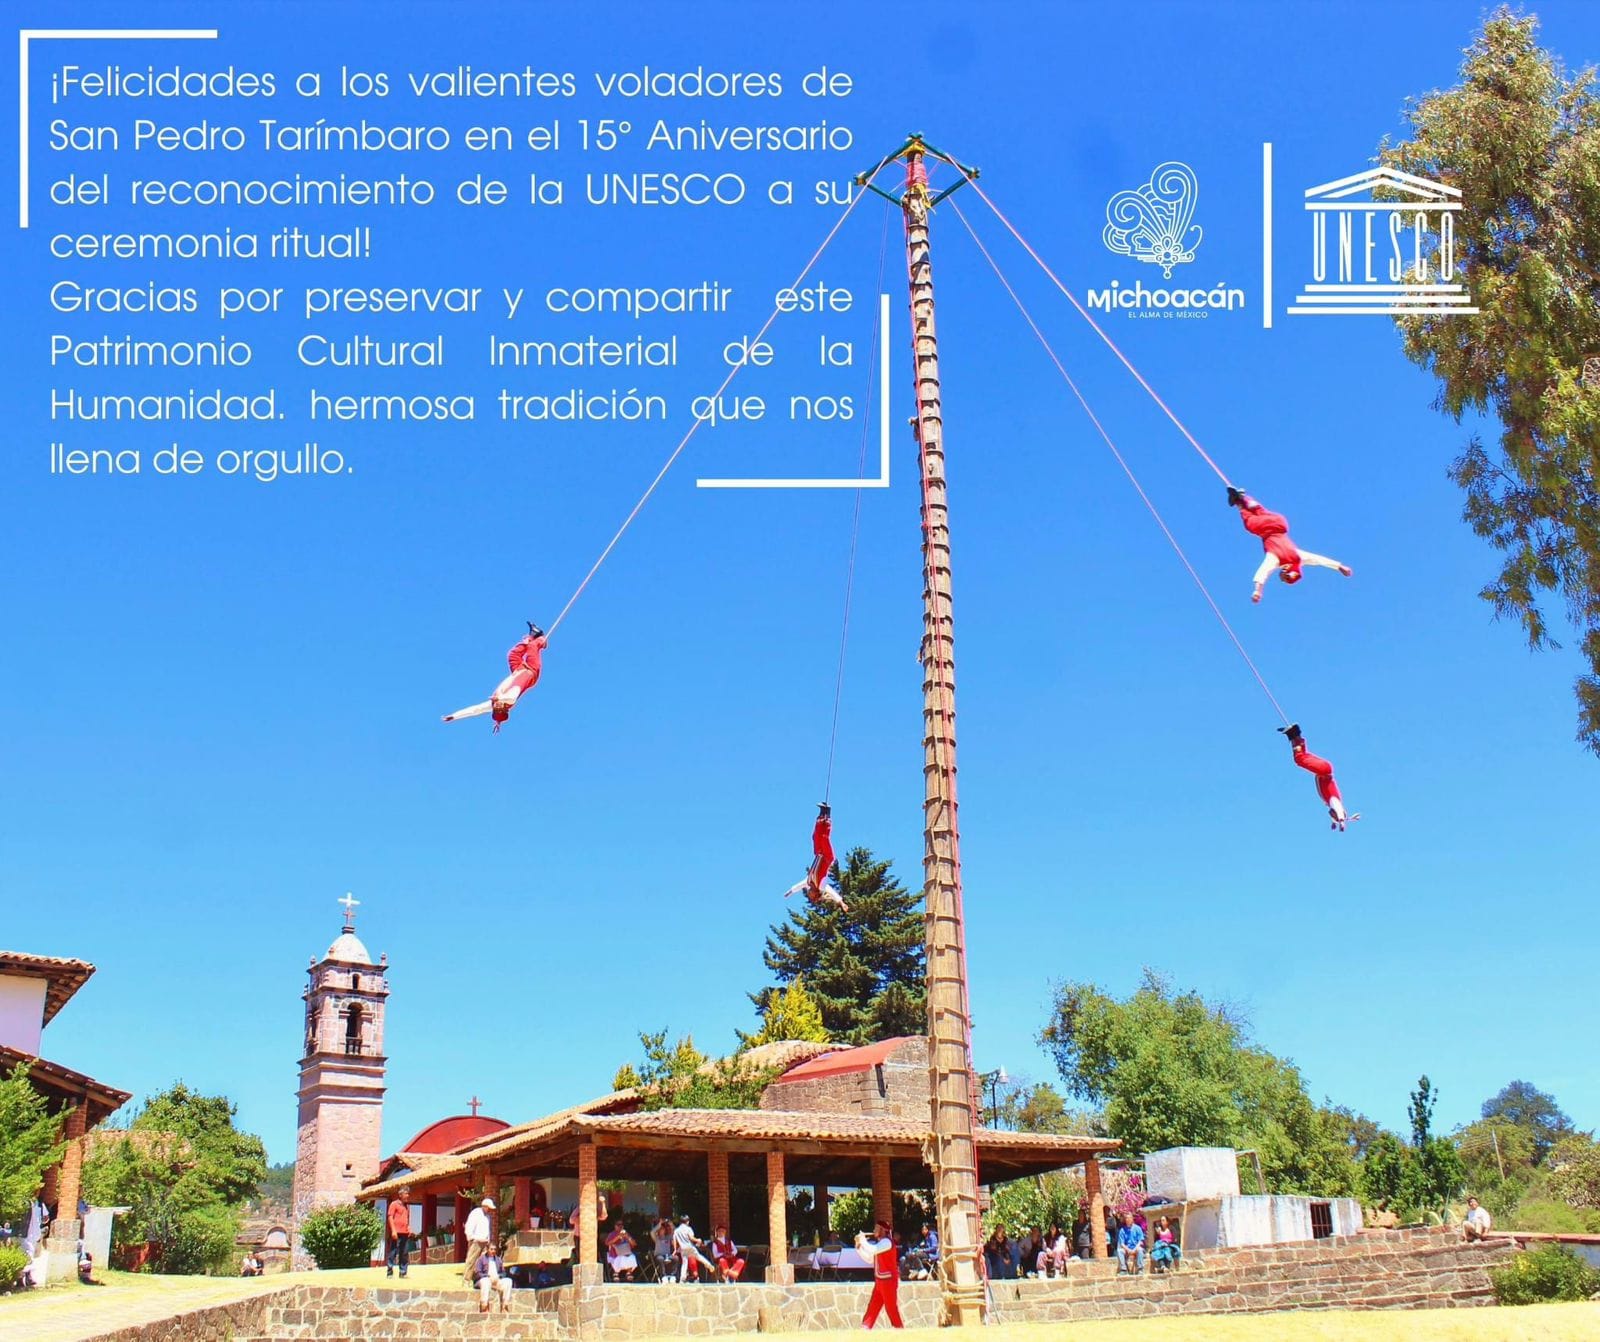 De acuerdo con la Secretaría de Turismo de Michoacán (Sectur), que encabeza Roberto Monroy García, en esta ceremonia que une al pueblo, se observa a los cuatro voladores representar los puntos cardinales, surcando lo terrenal y lo divino.